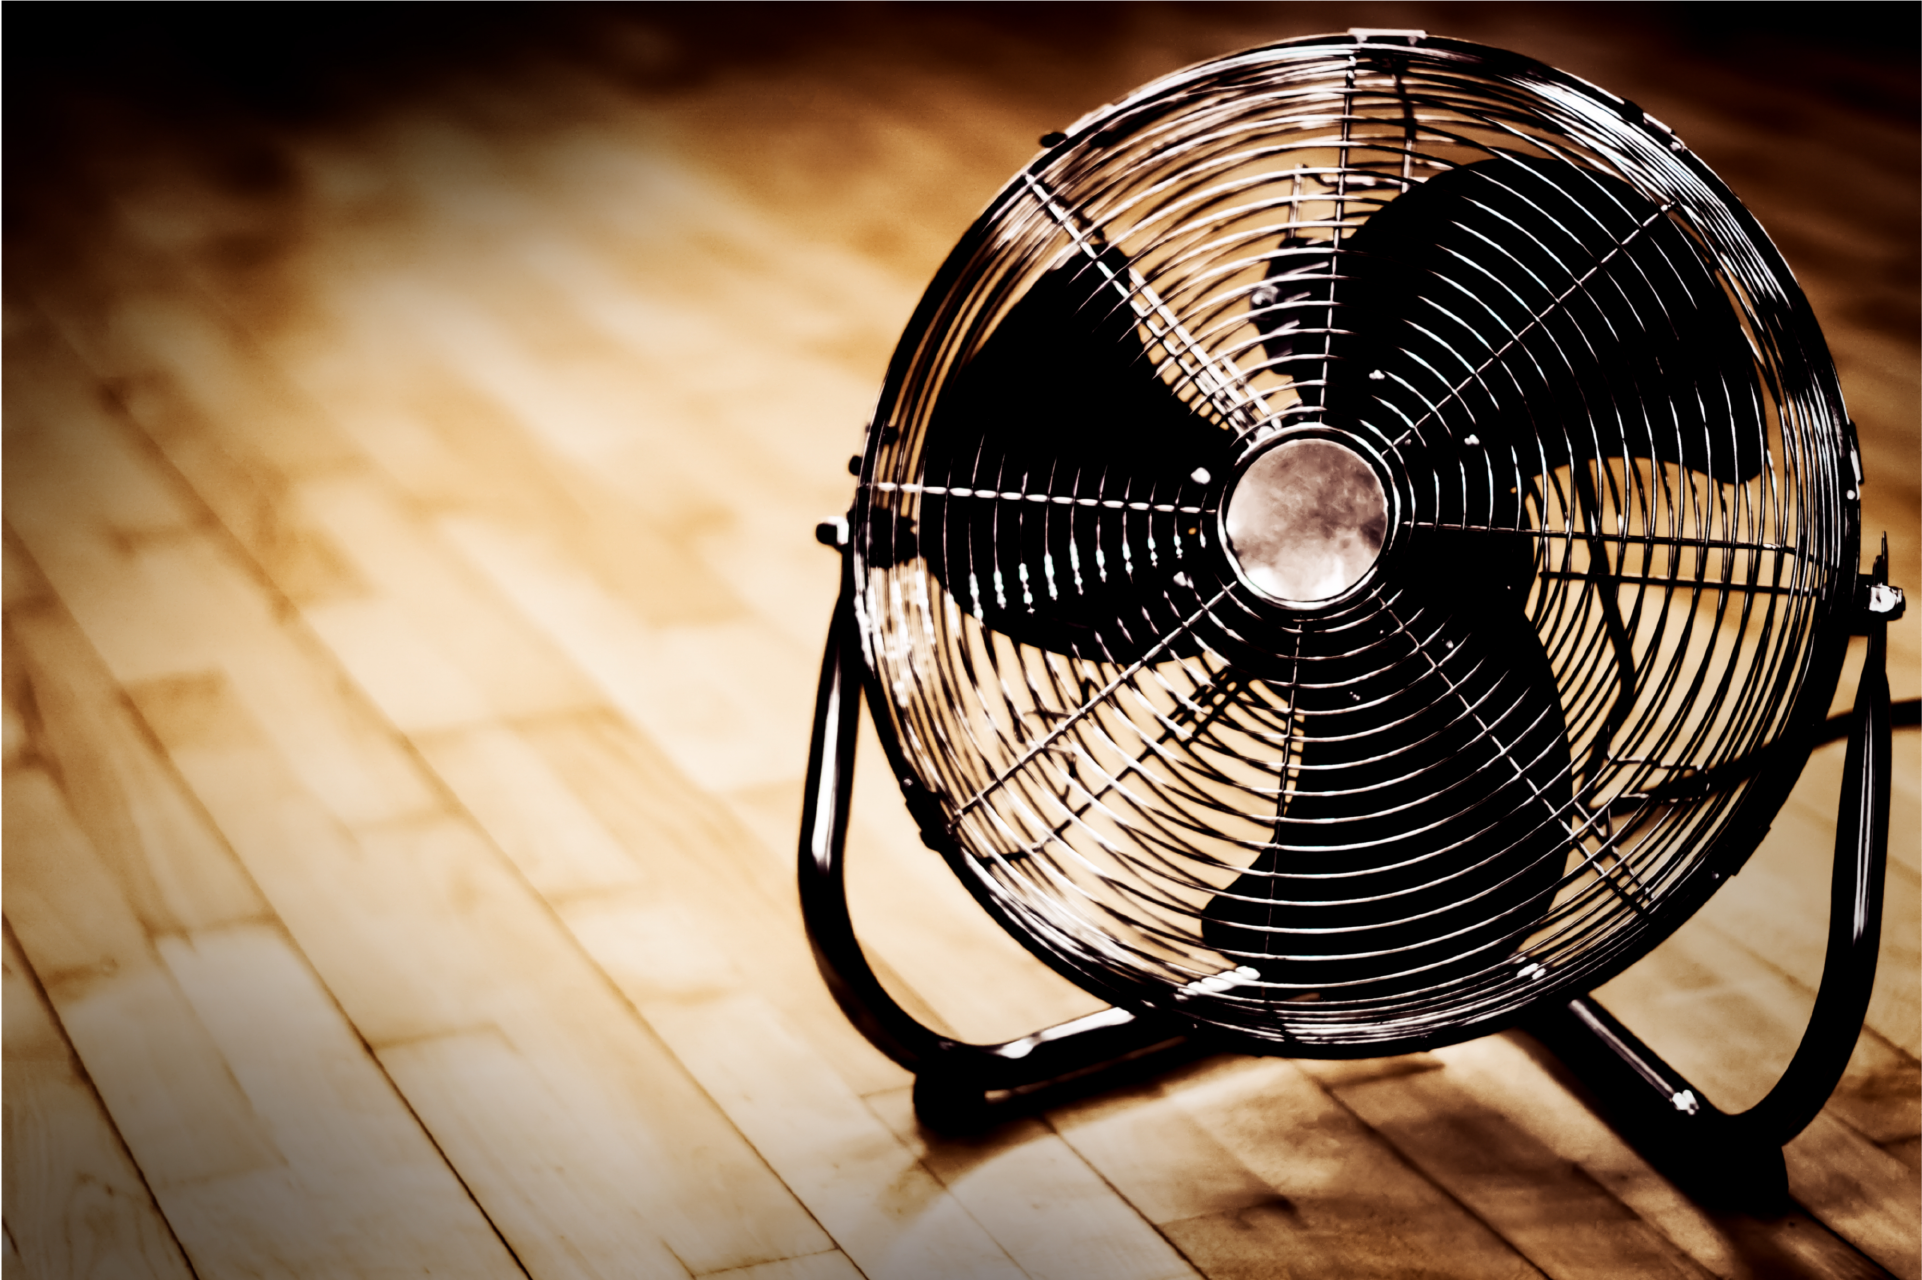 Eletric fan on hardwood floor